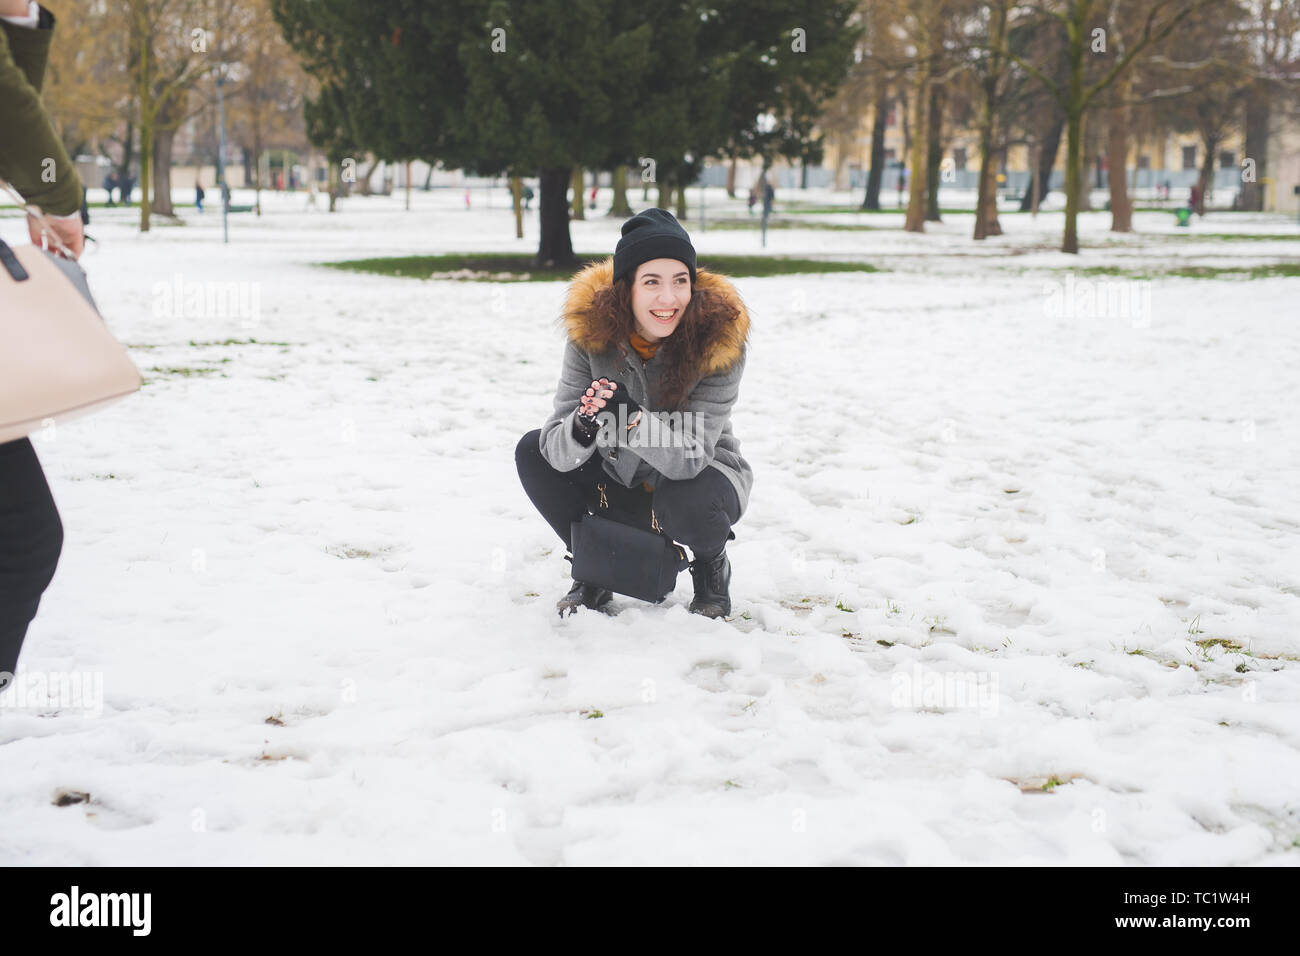 Porträt der jungen Frau in die Hocke, im Park mit Schnee - Unbekümmertheit, Urlaub, neue Generation Stockfoto